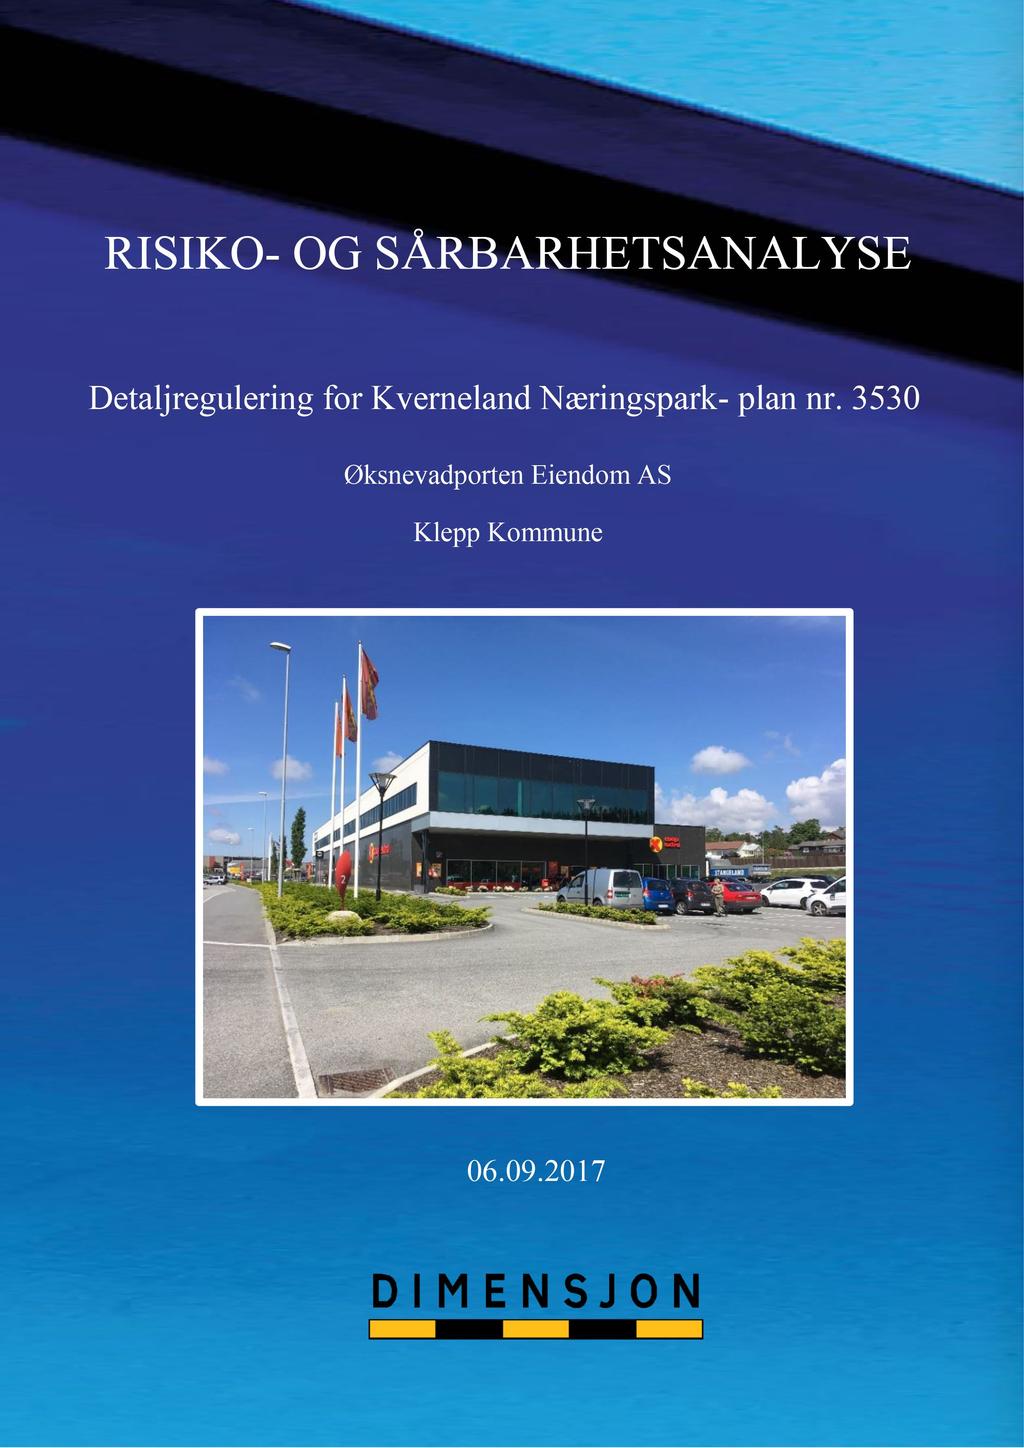 ROS - analyse_ Kverneland Næringspark, plan 3530 Side 1 RISIKO - OG SÅRBARHETS ANALYS